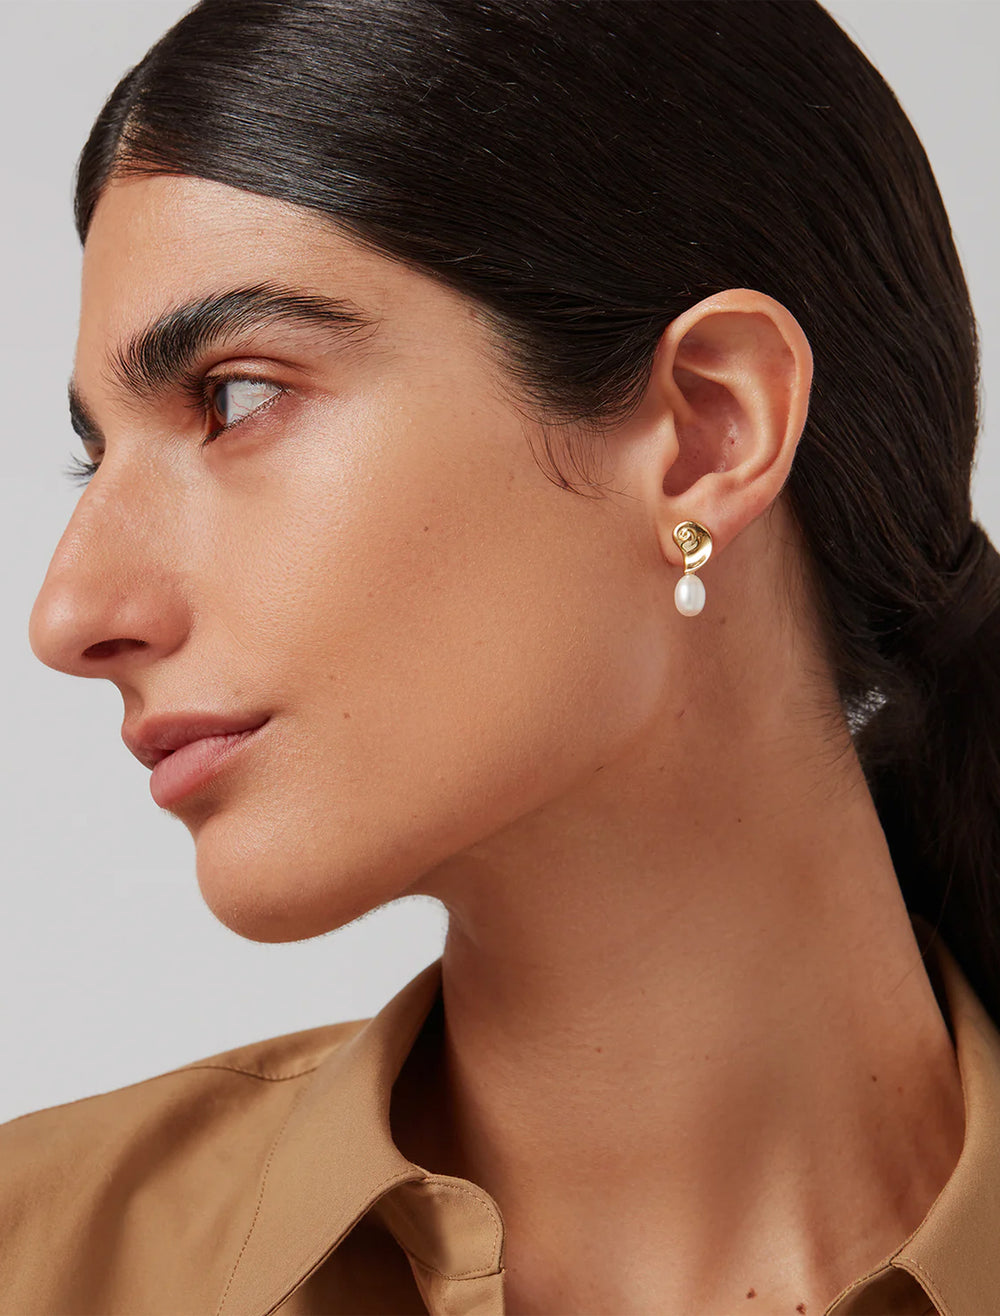 Model wearing Jenny Bird's lucille earrings in gold.